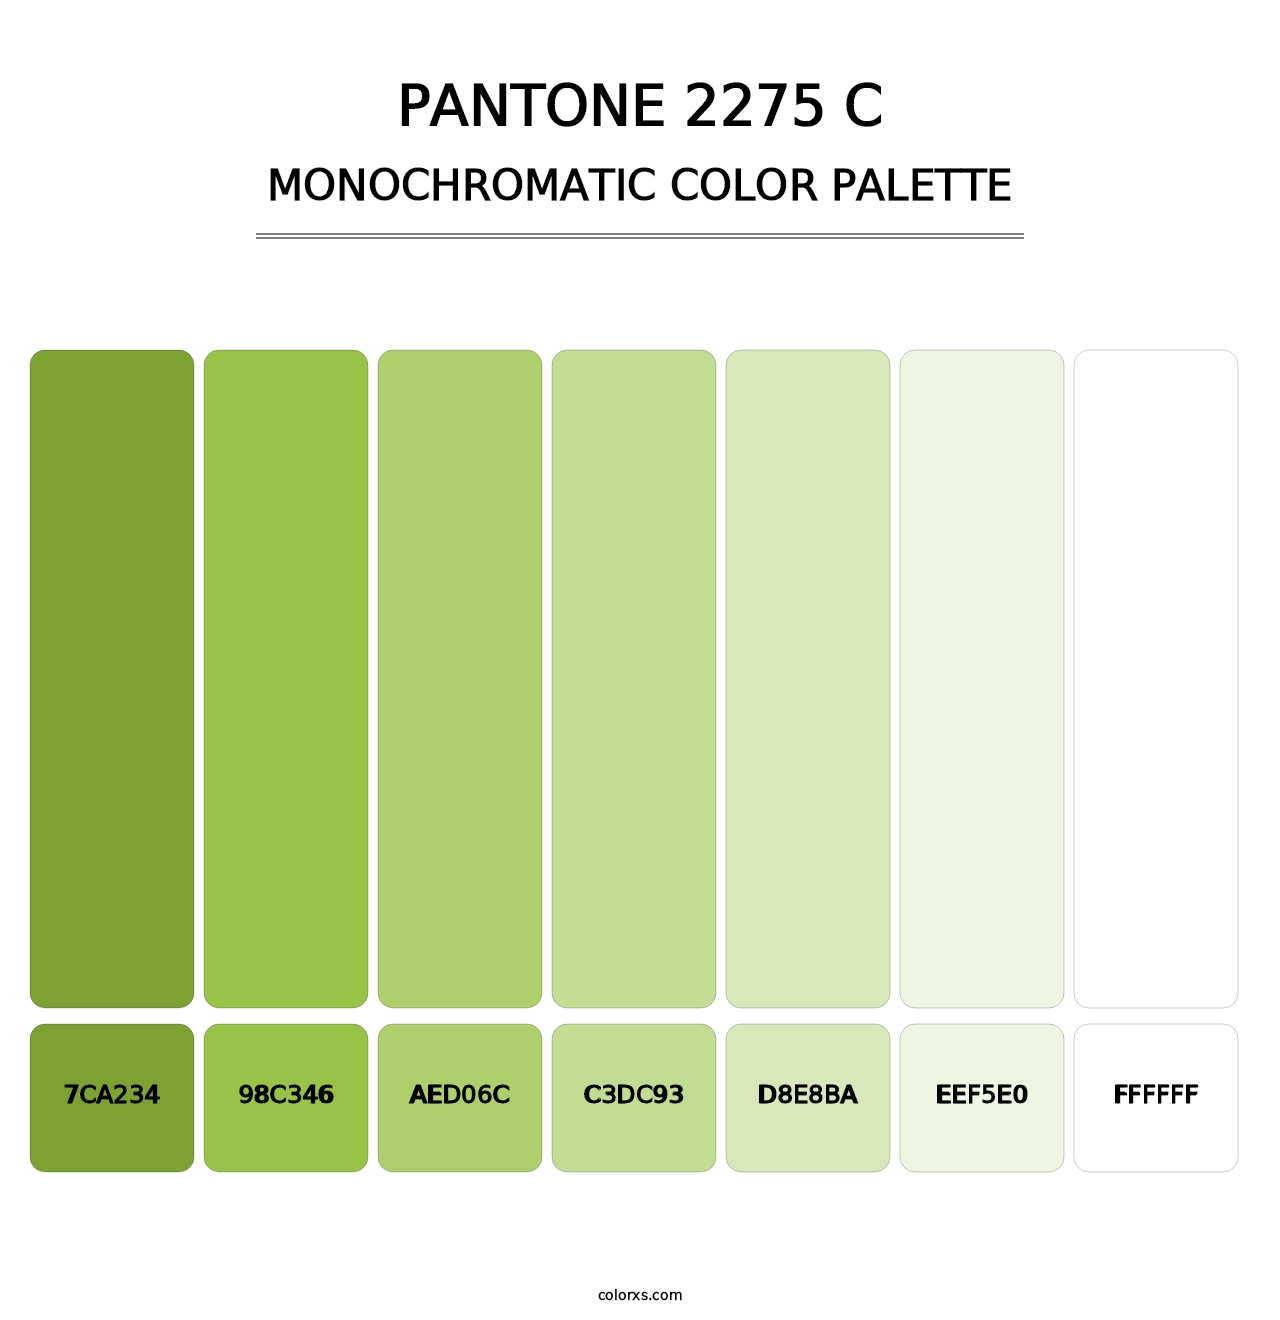 PANTONE 2275 C - Monochromatic Color Palette